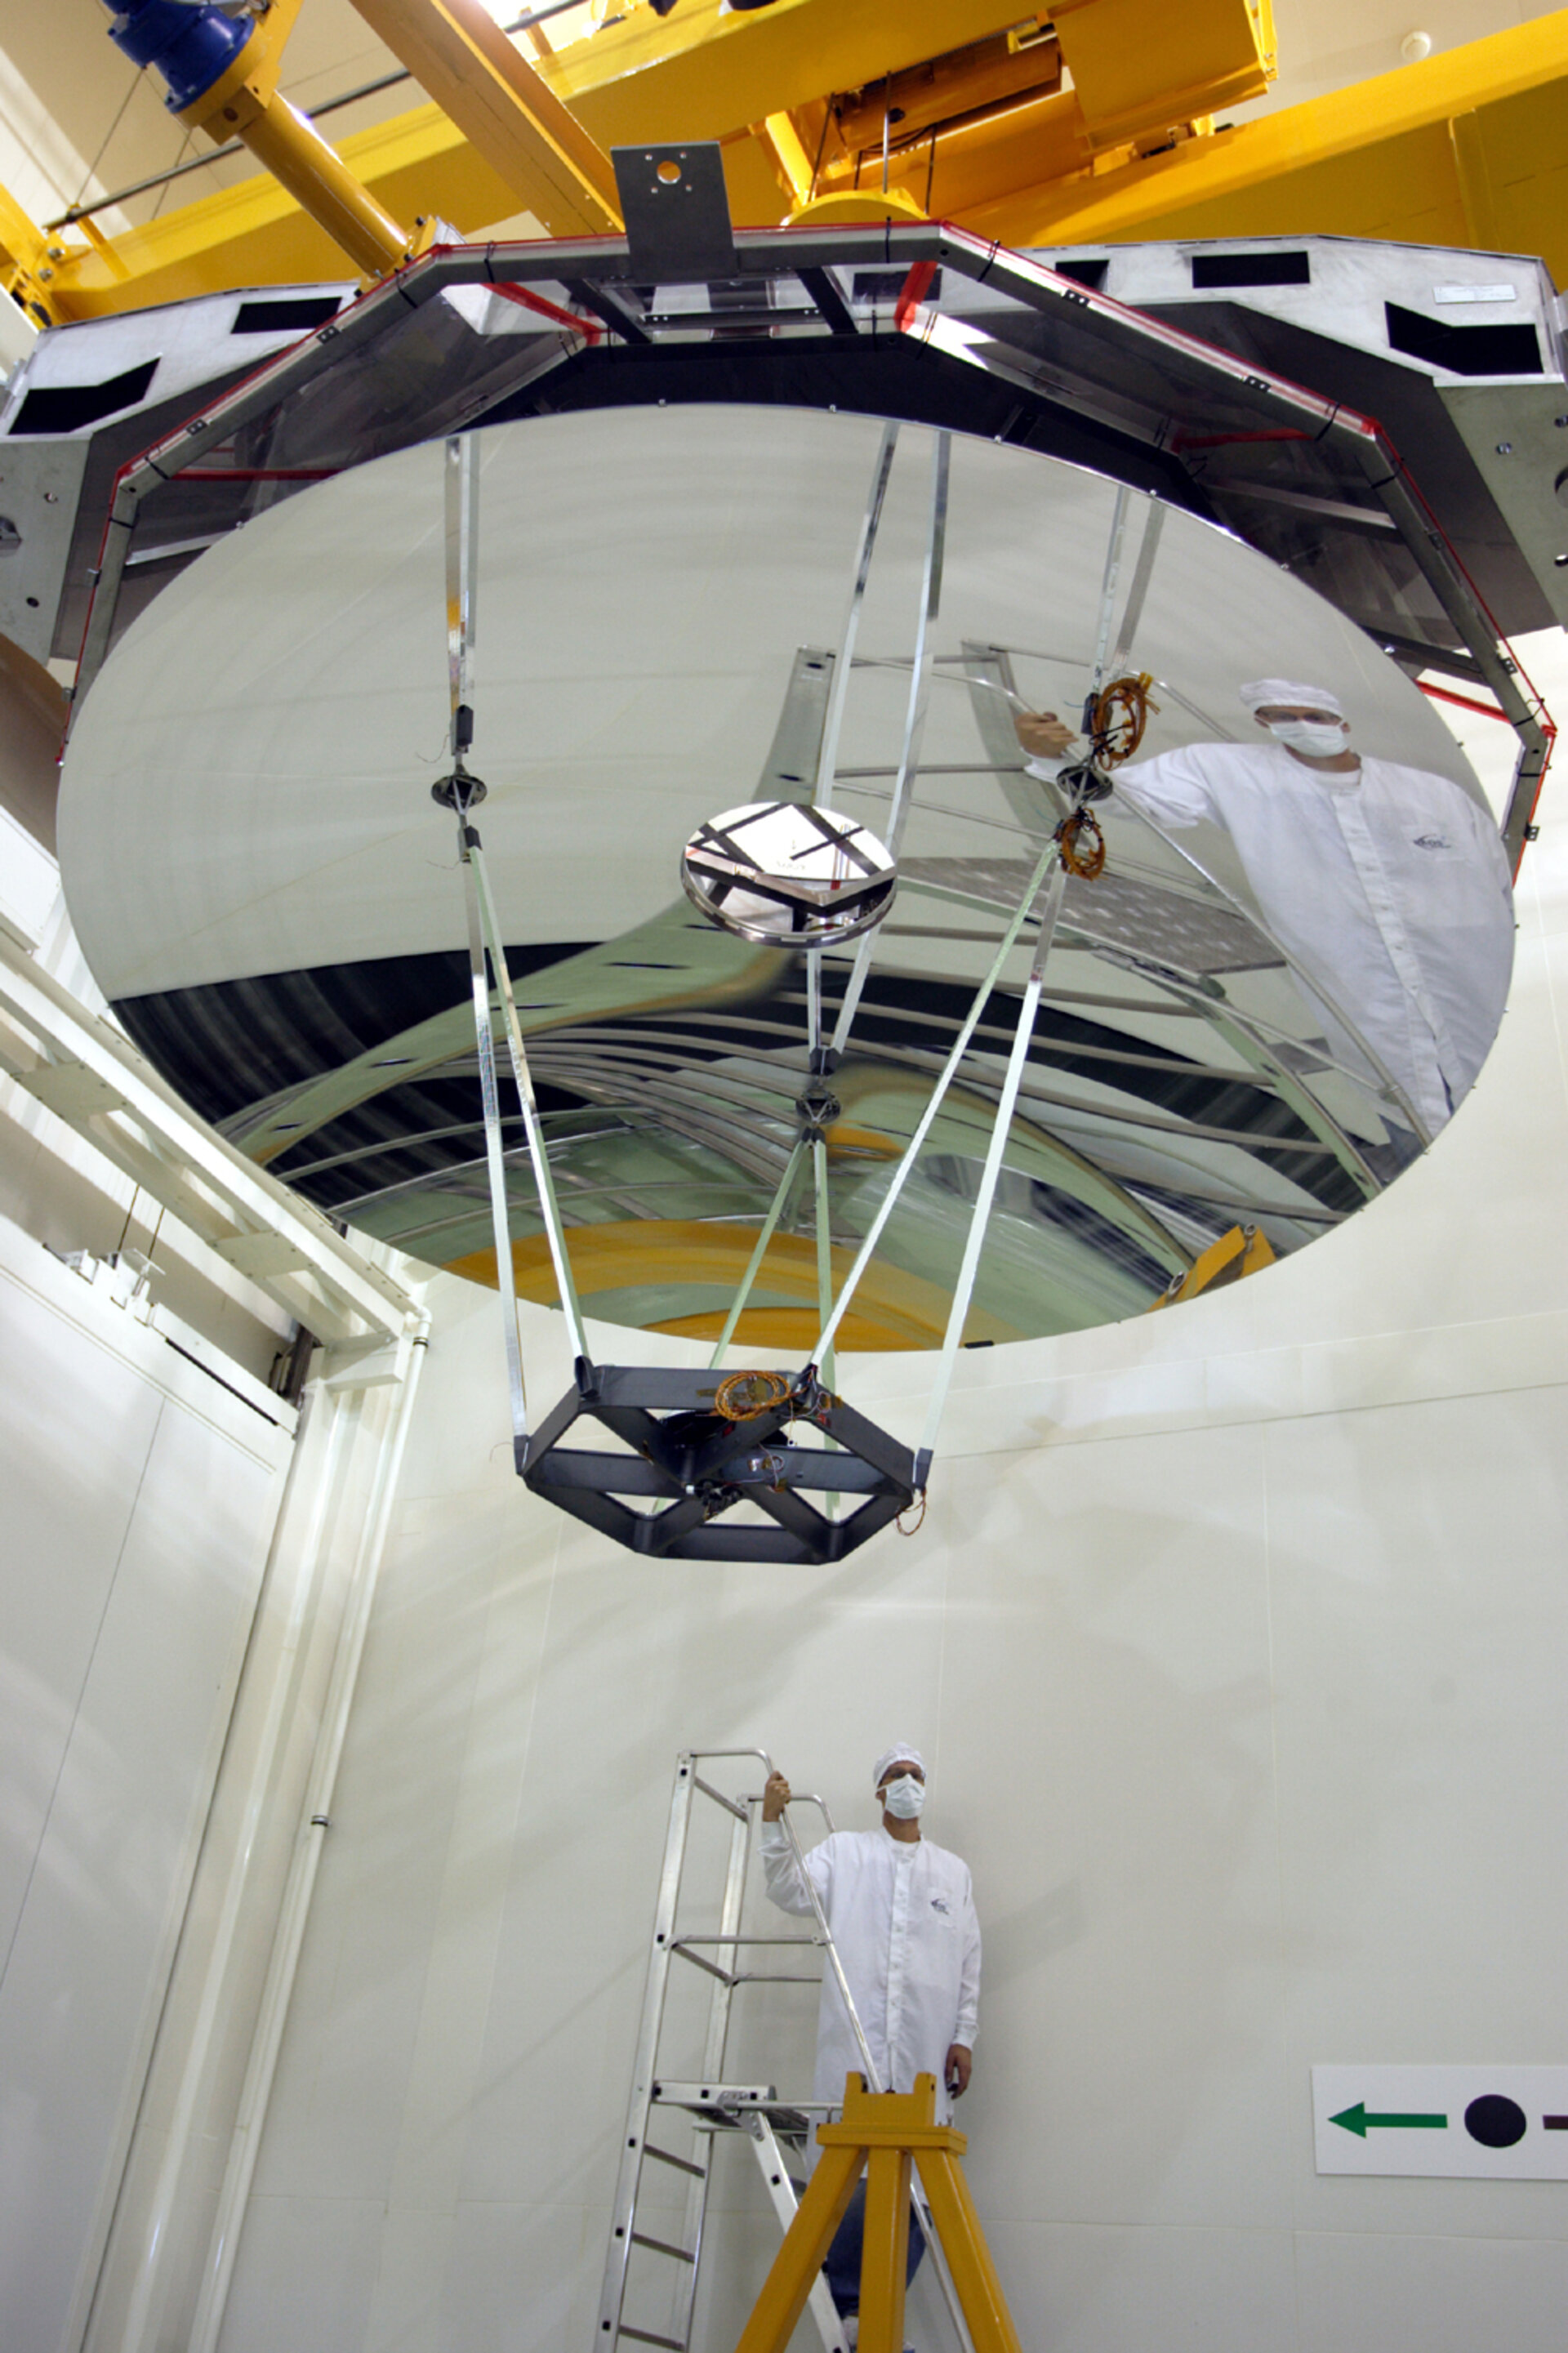 Herschel telescope assembled